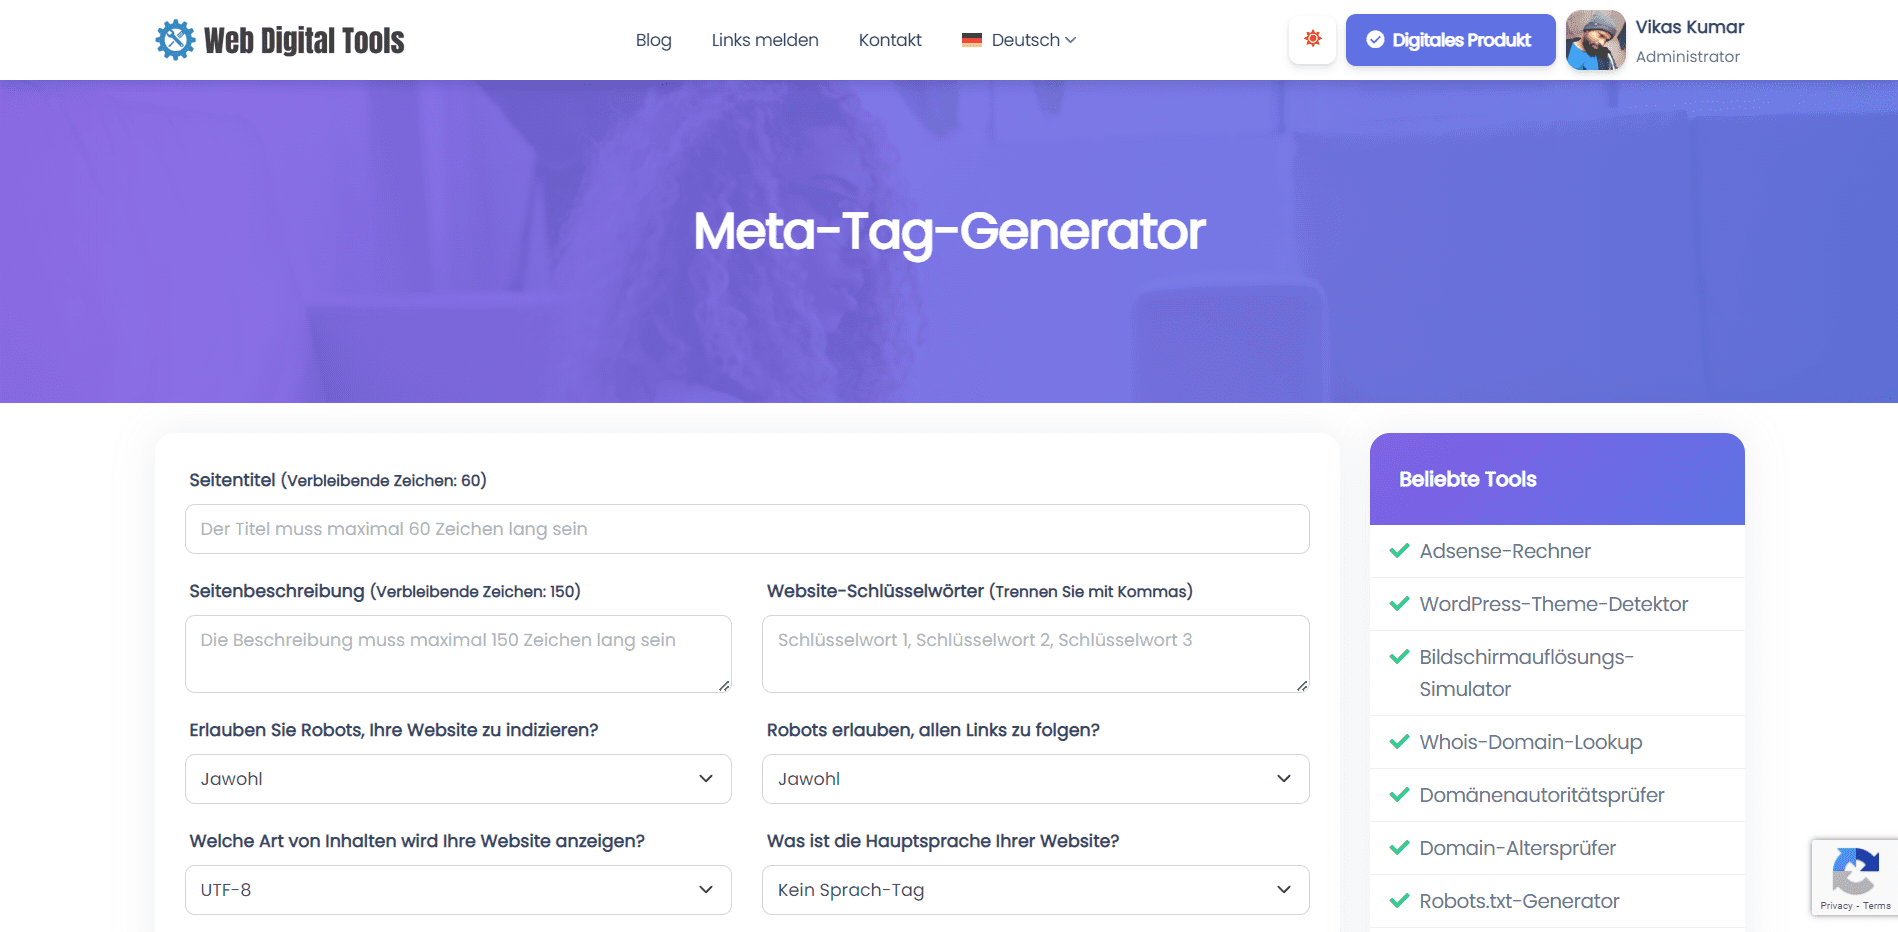 Meta-Tag-Generator